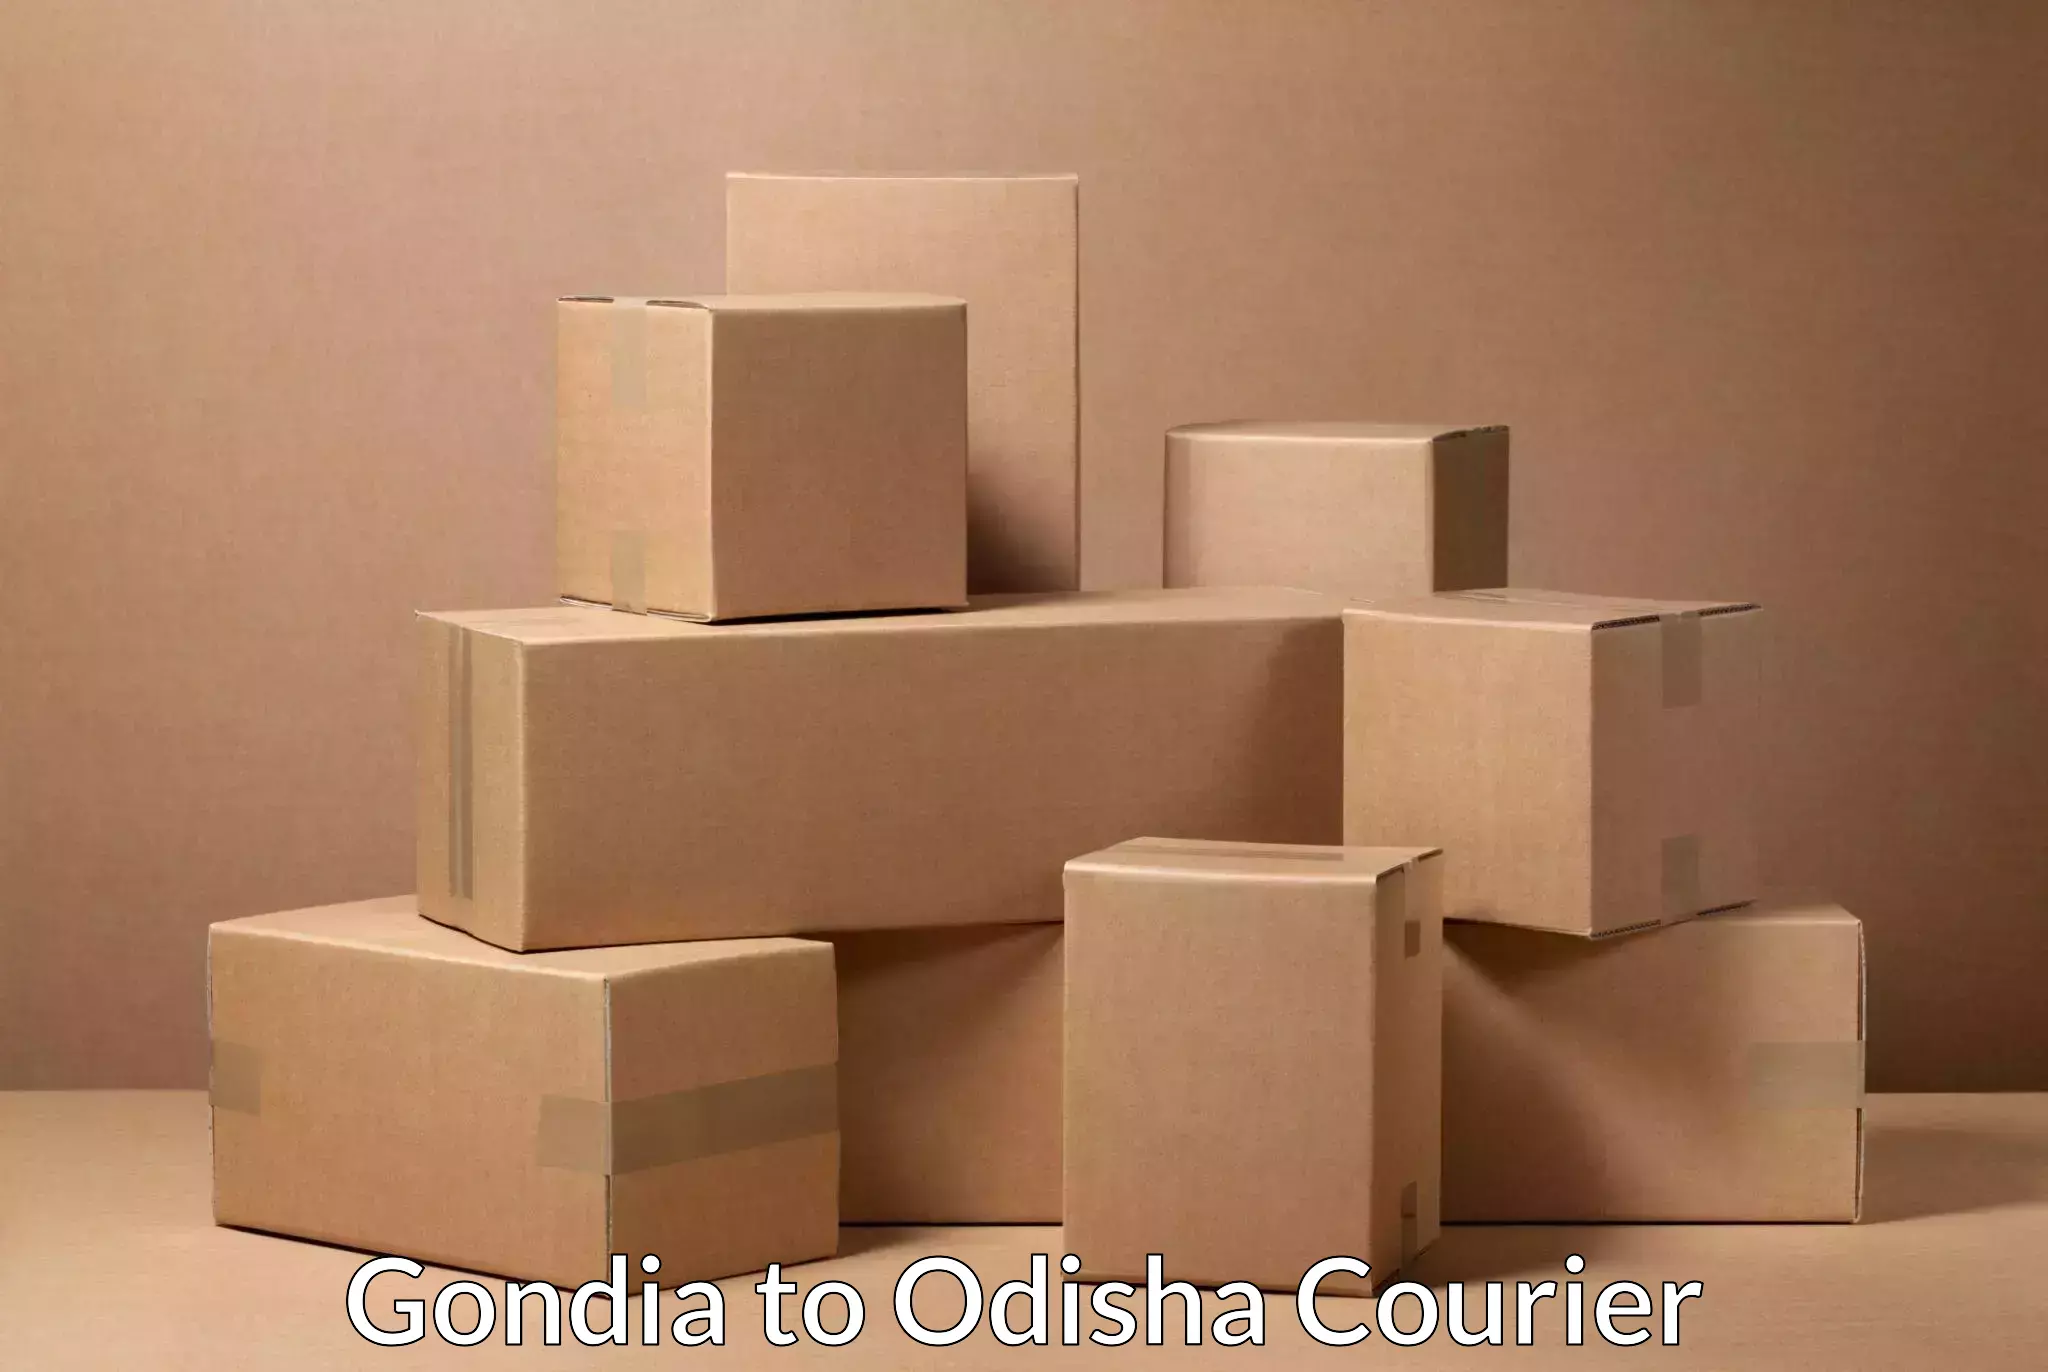 Urban courier service Gondia to Malkangiri